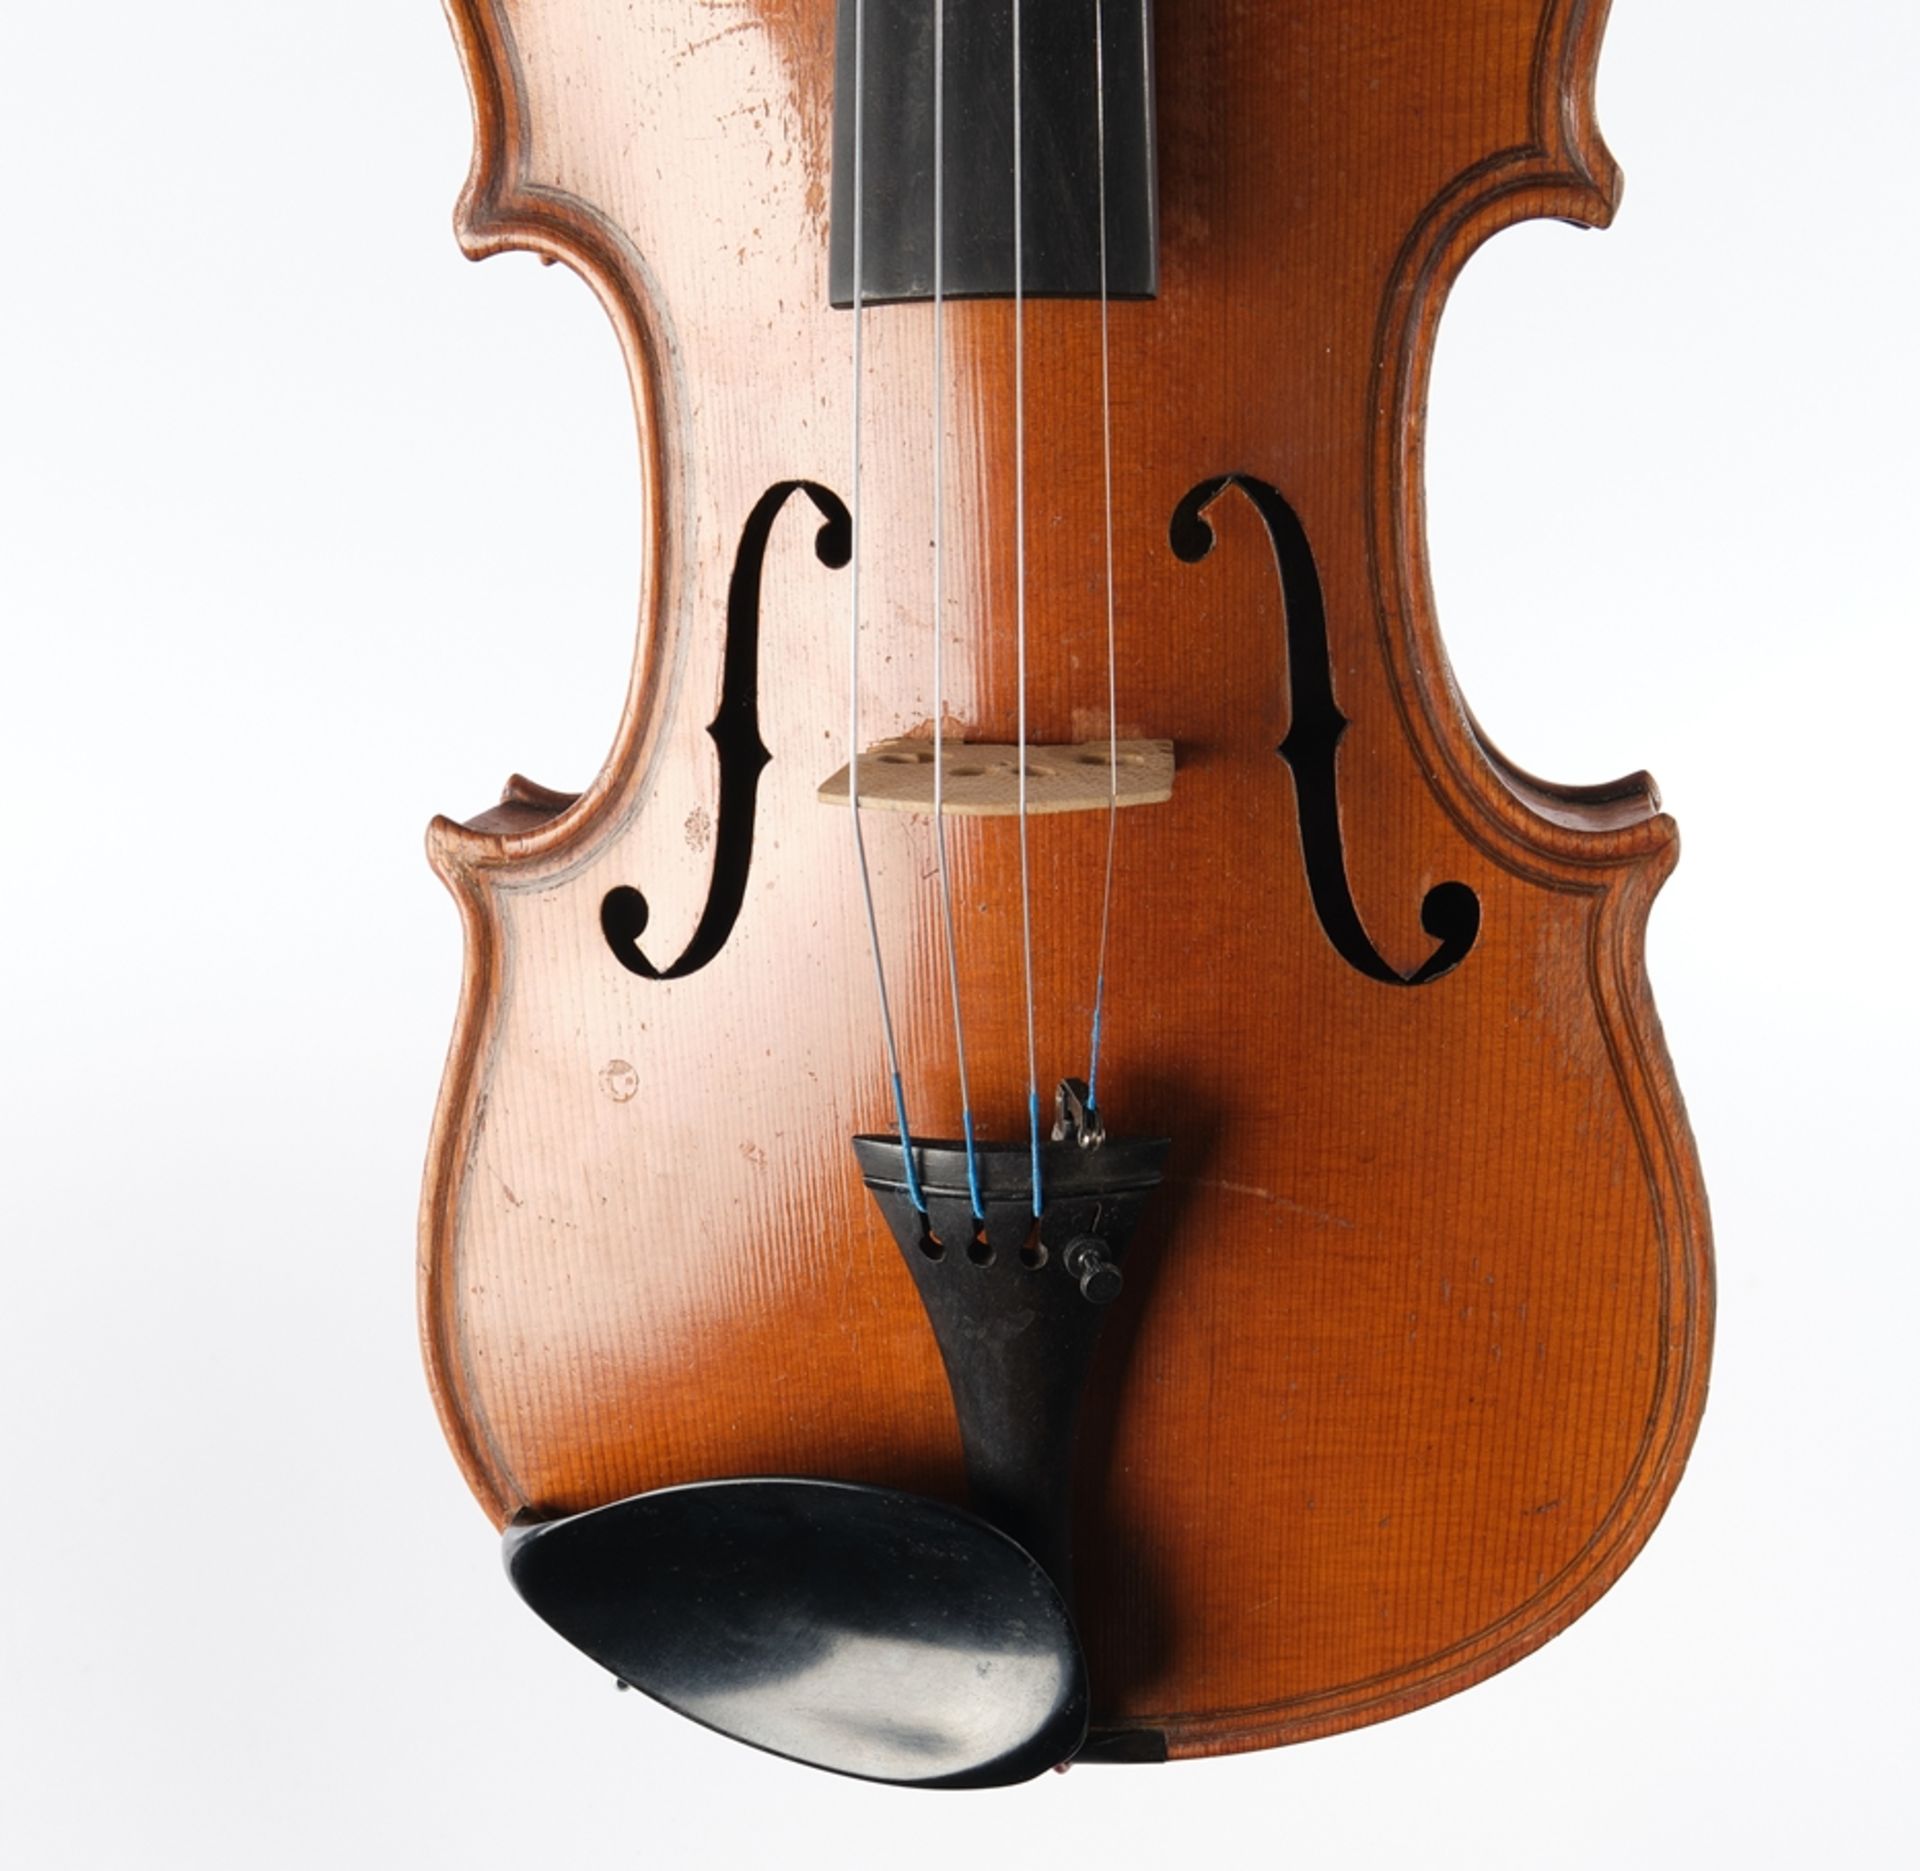 Violine, wohl Replikat, bez. Curletto Anselmo (1888 - 1973), im Korpusboden auf einem Etikett bezei - Bild 9 aus 9